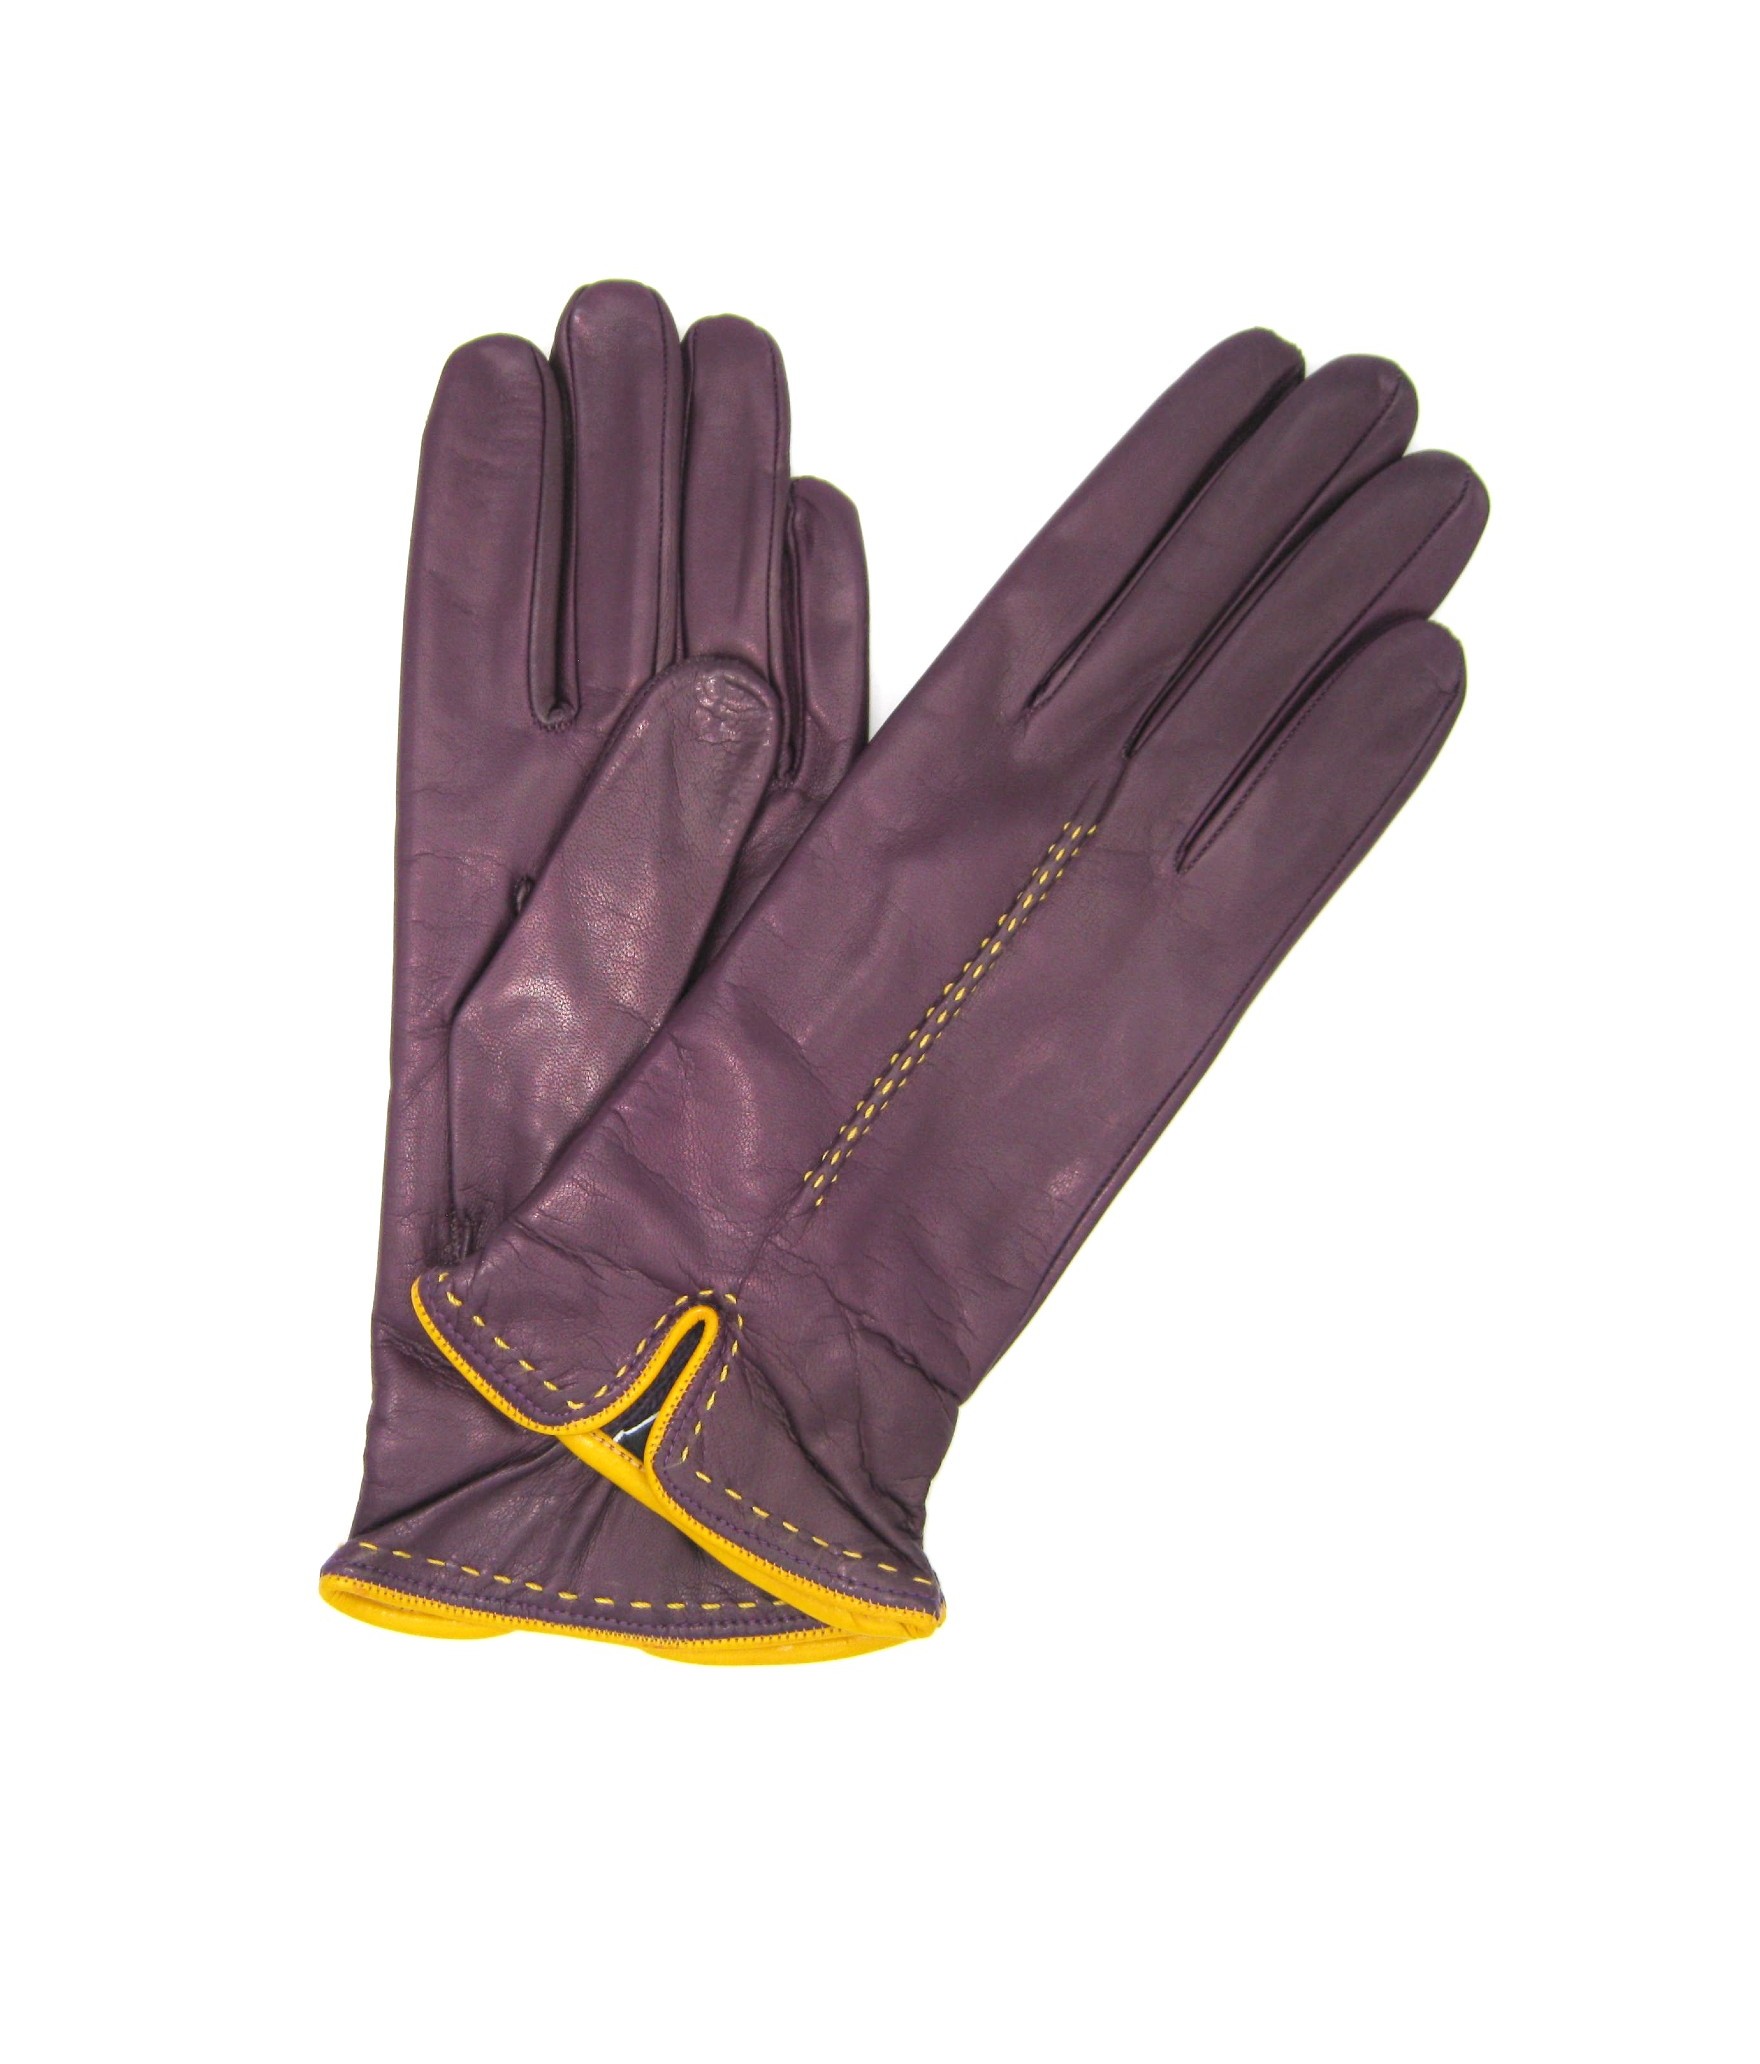 Donna Fashion Nappaleder handschuhe mit handgelenk detail